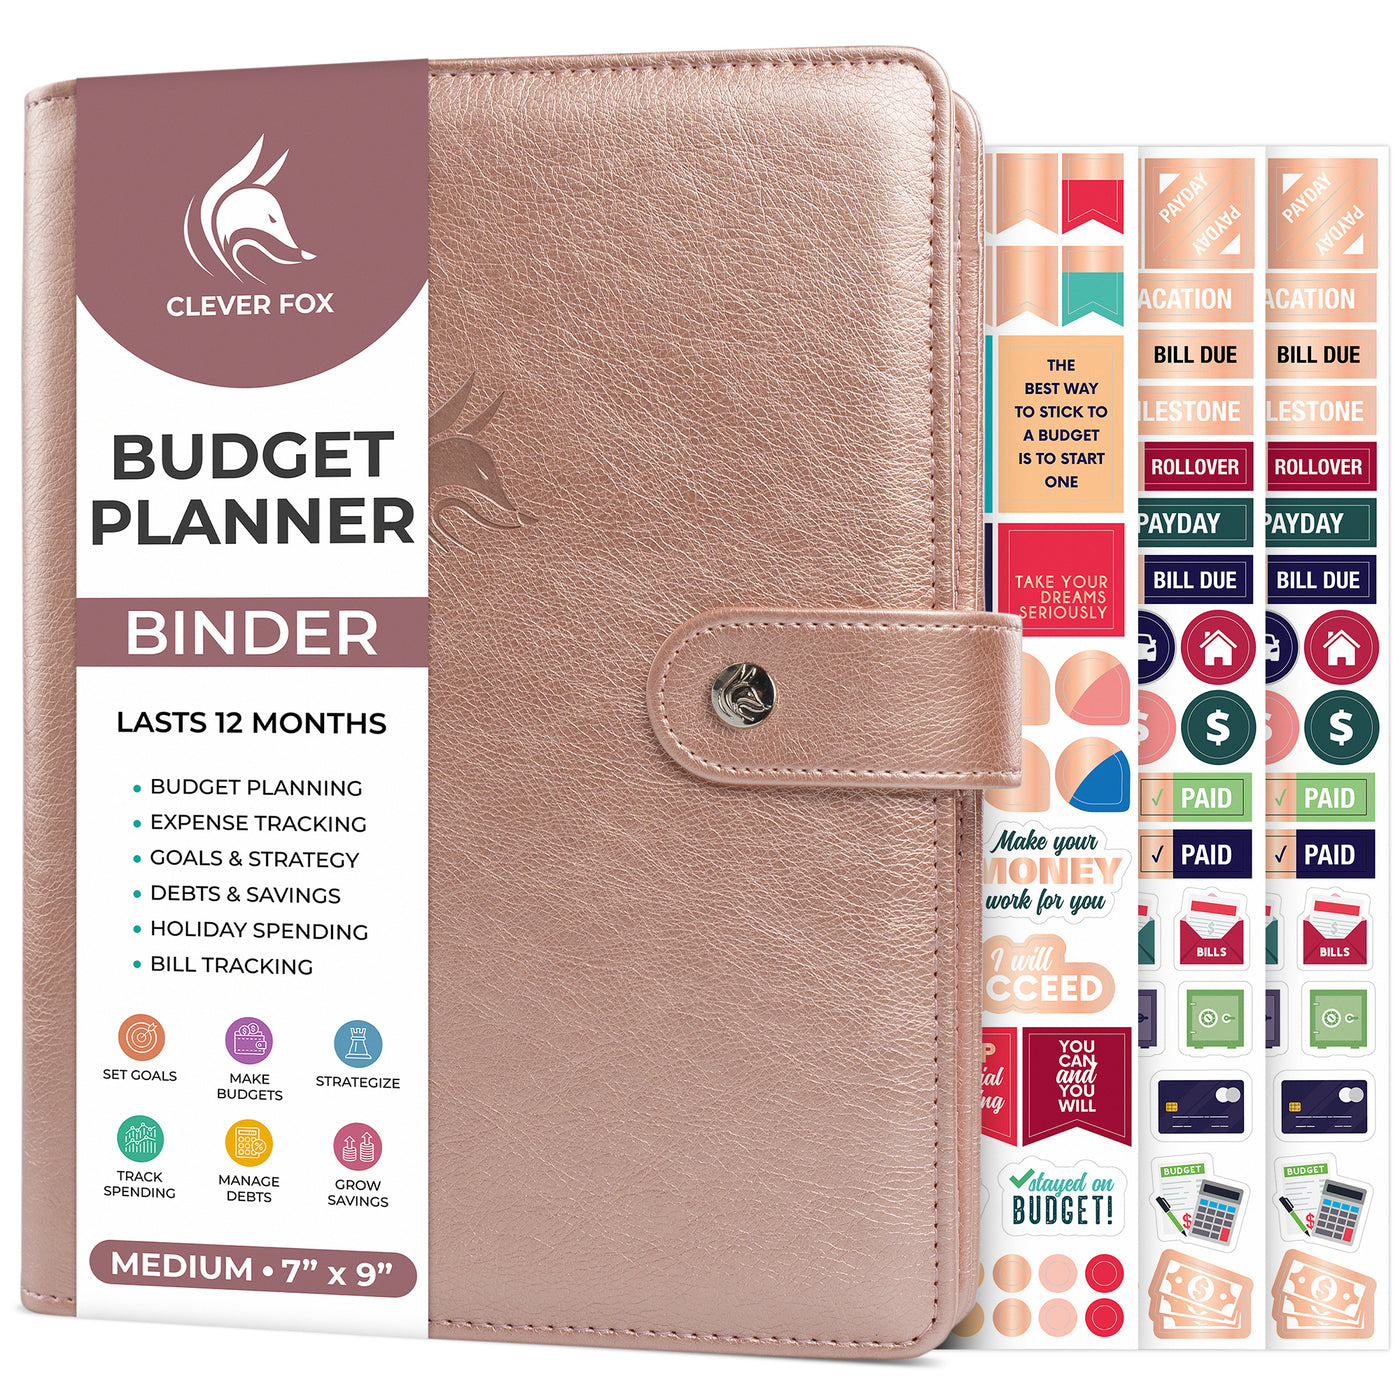 Budget Binder Starter Set With 5 Cash Wallets/ Budget Planner